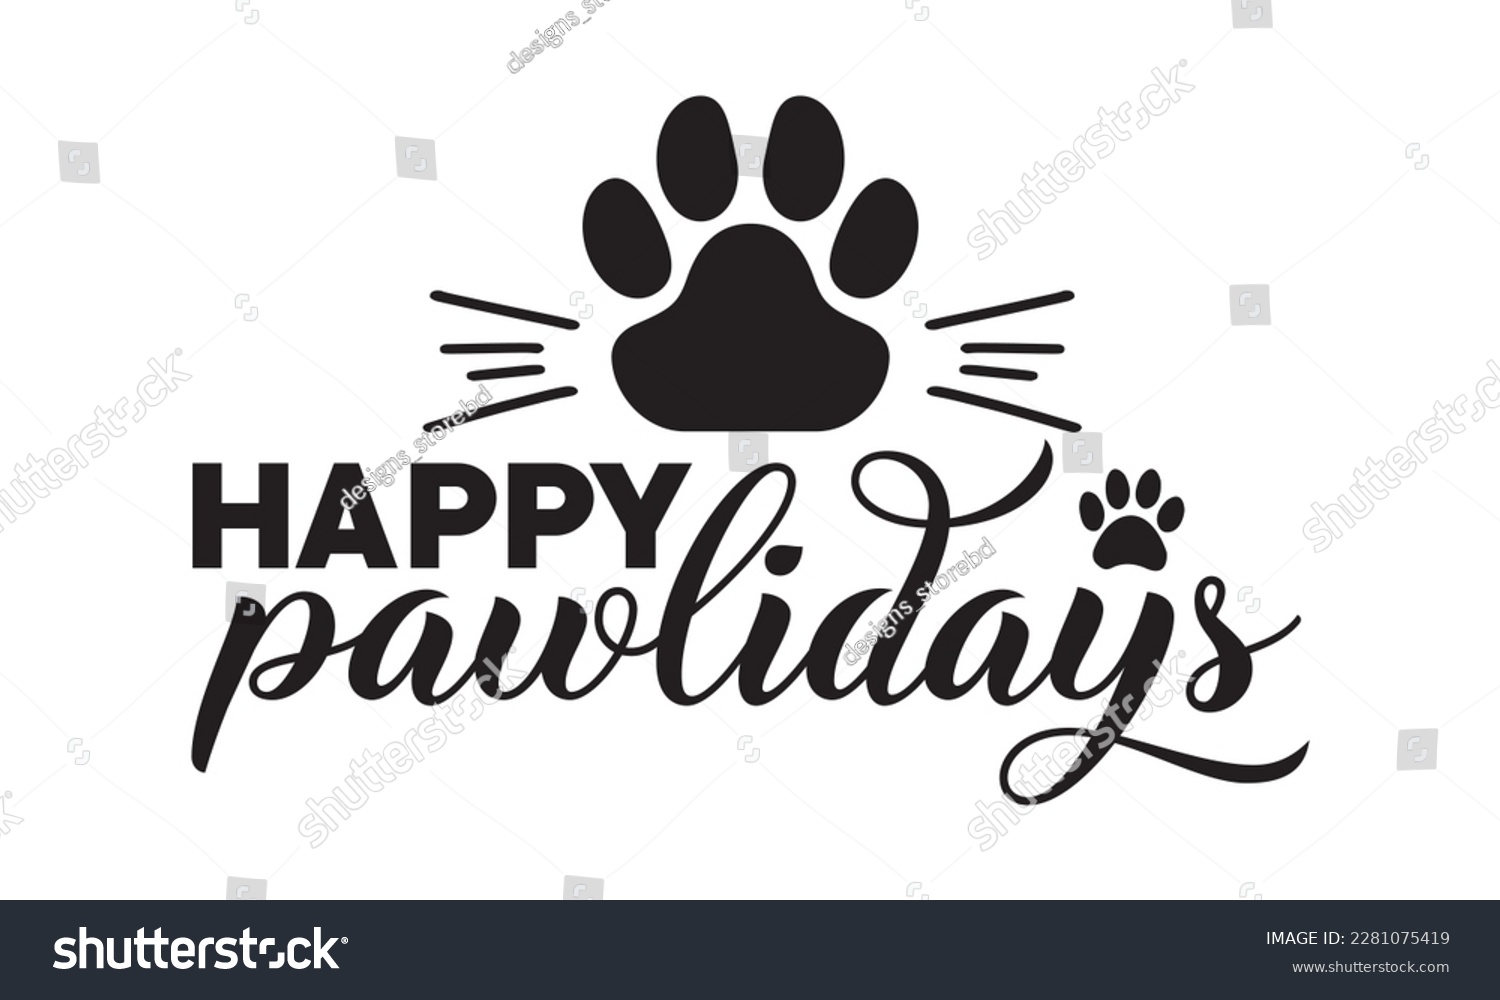 SVG of Happy pawlidays svg ,dog SVG Bundle, dog SVG design bundle and  t-shirt design, Funny Dog Quotes SVG Designs and cut files, fur mom, animal design, animal lover svg